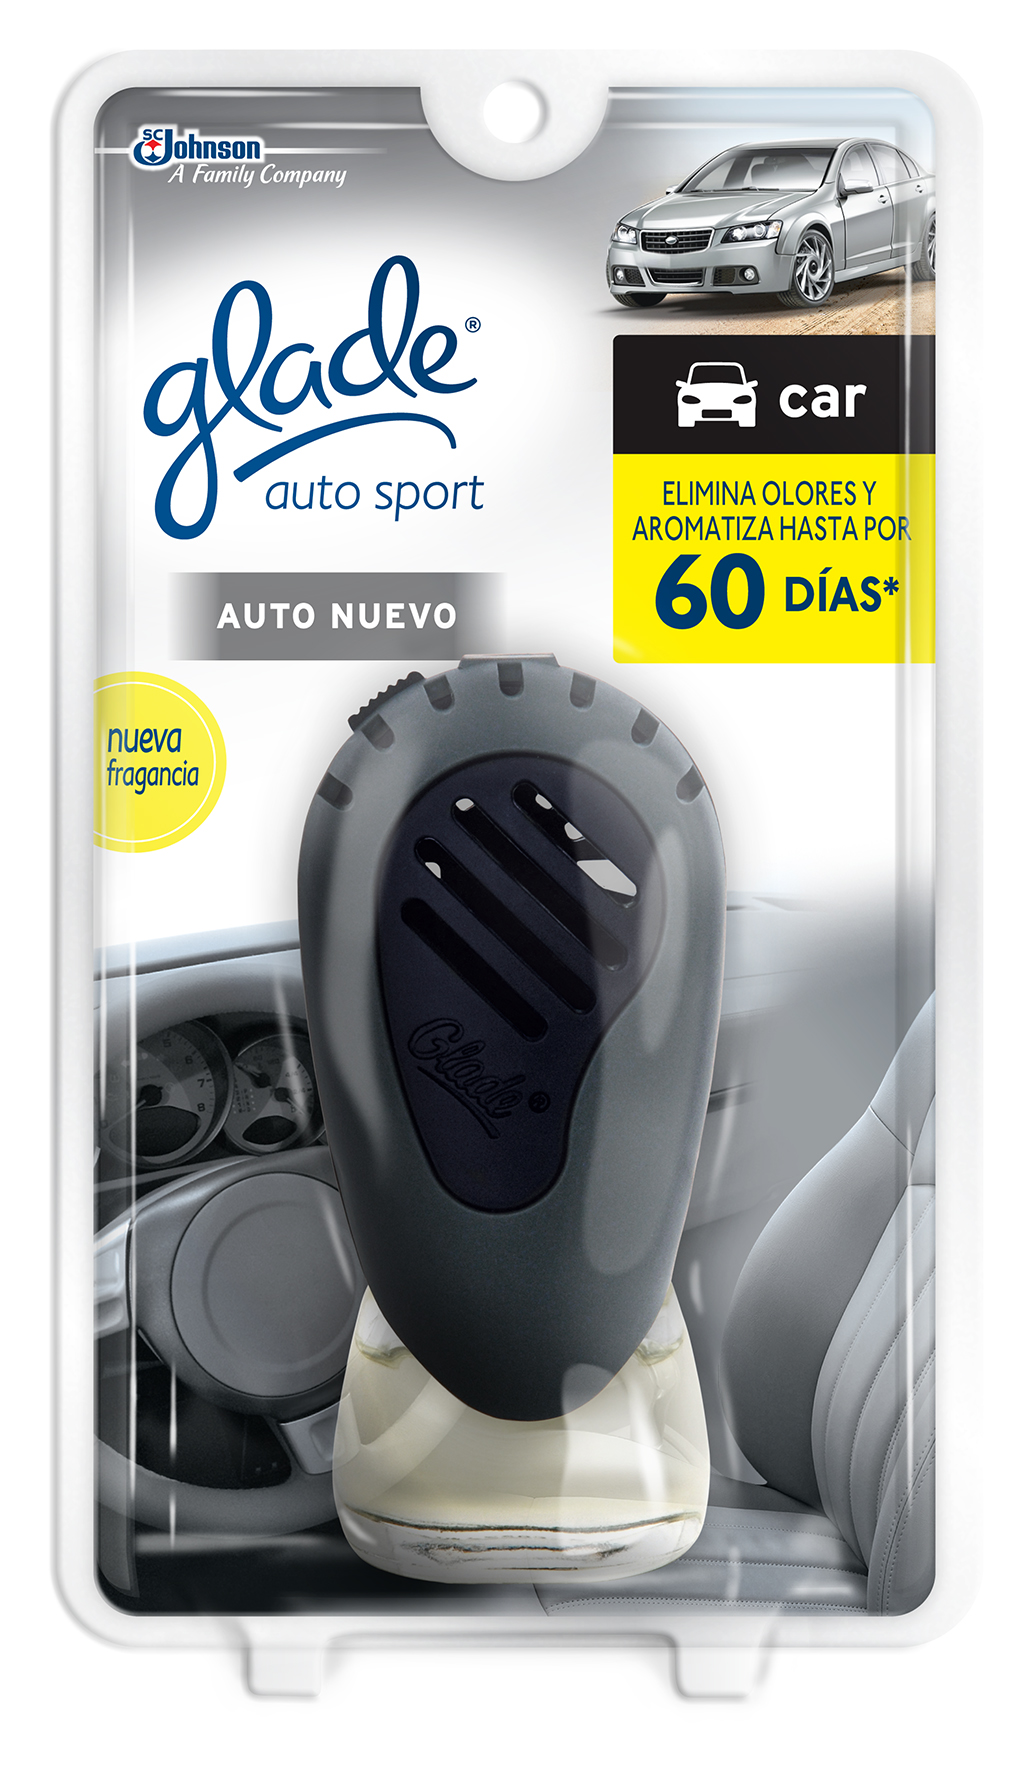 Glade® Auto Sport Aparato Auto Nuevo